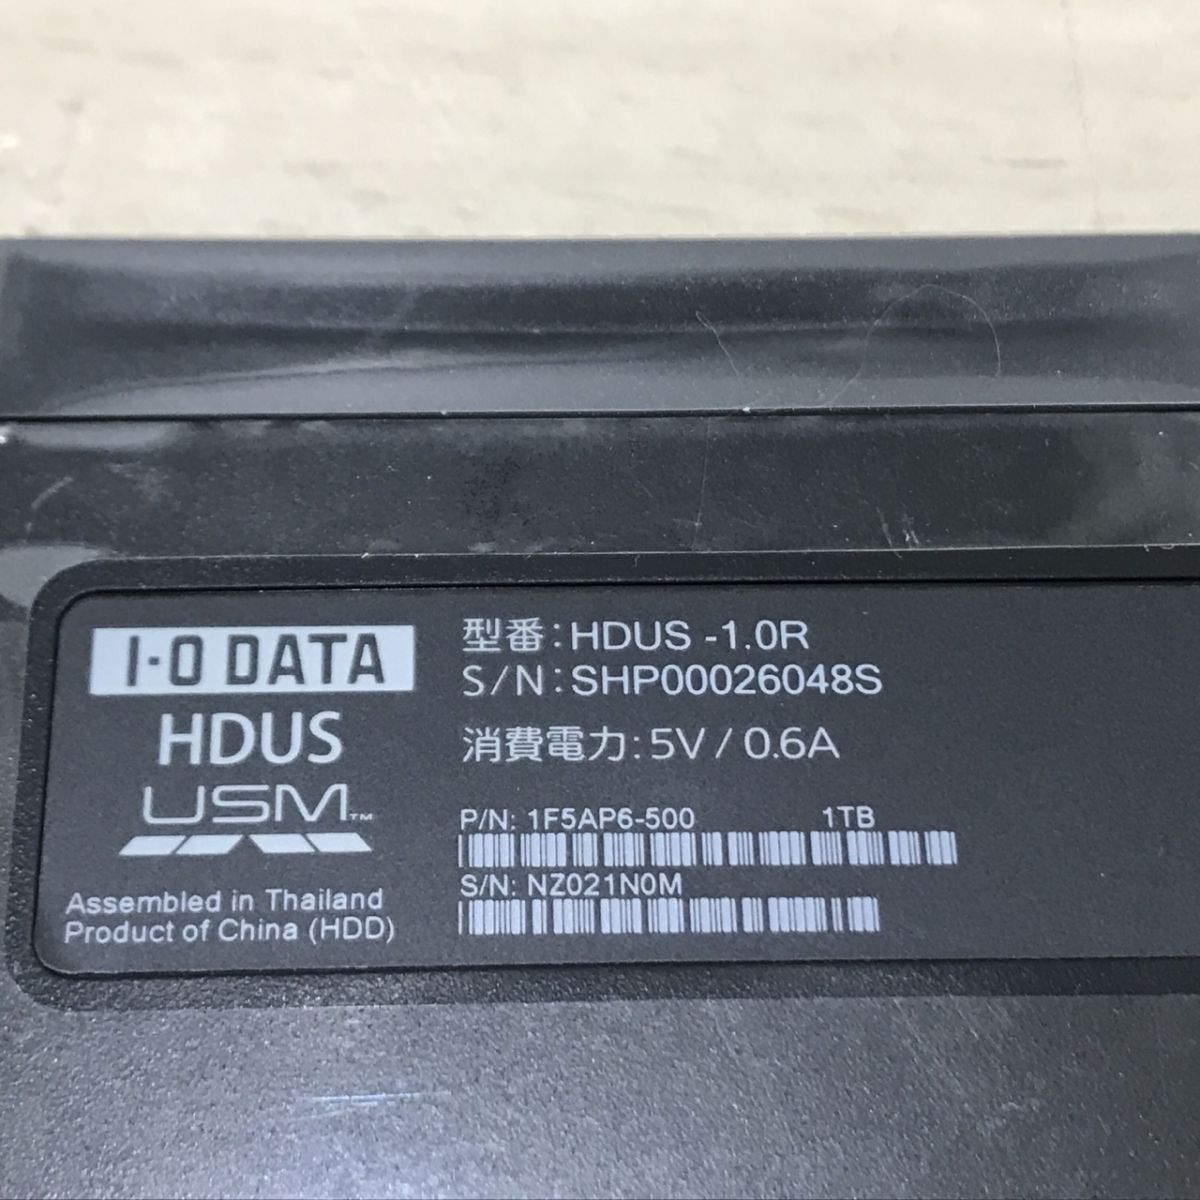 I*O DATA I *o-* данные USB подключение портативный жесткий диск 1.0TB красный HDUS-UT1.0R[C4610]